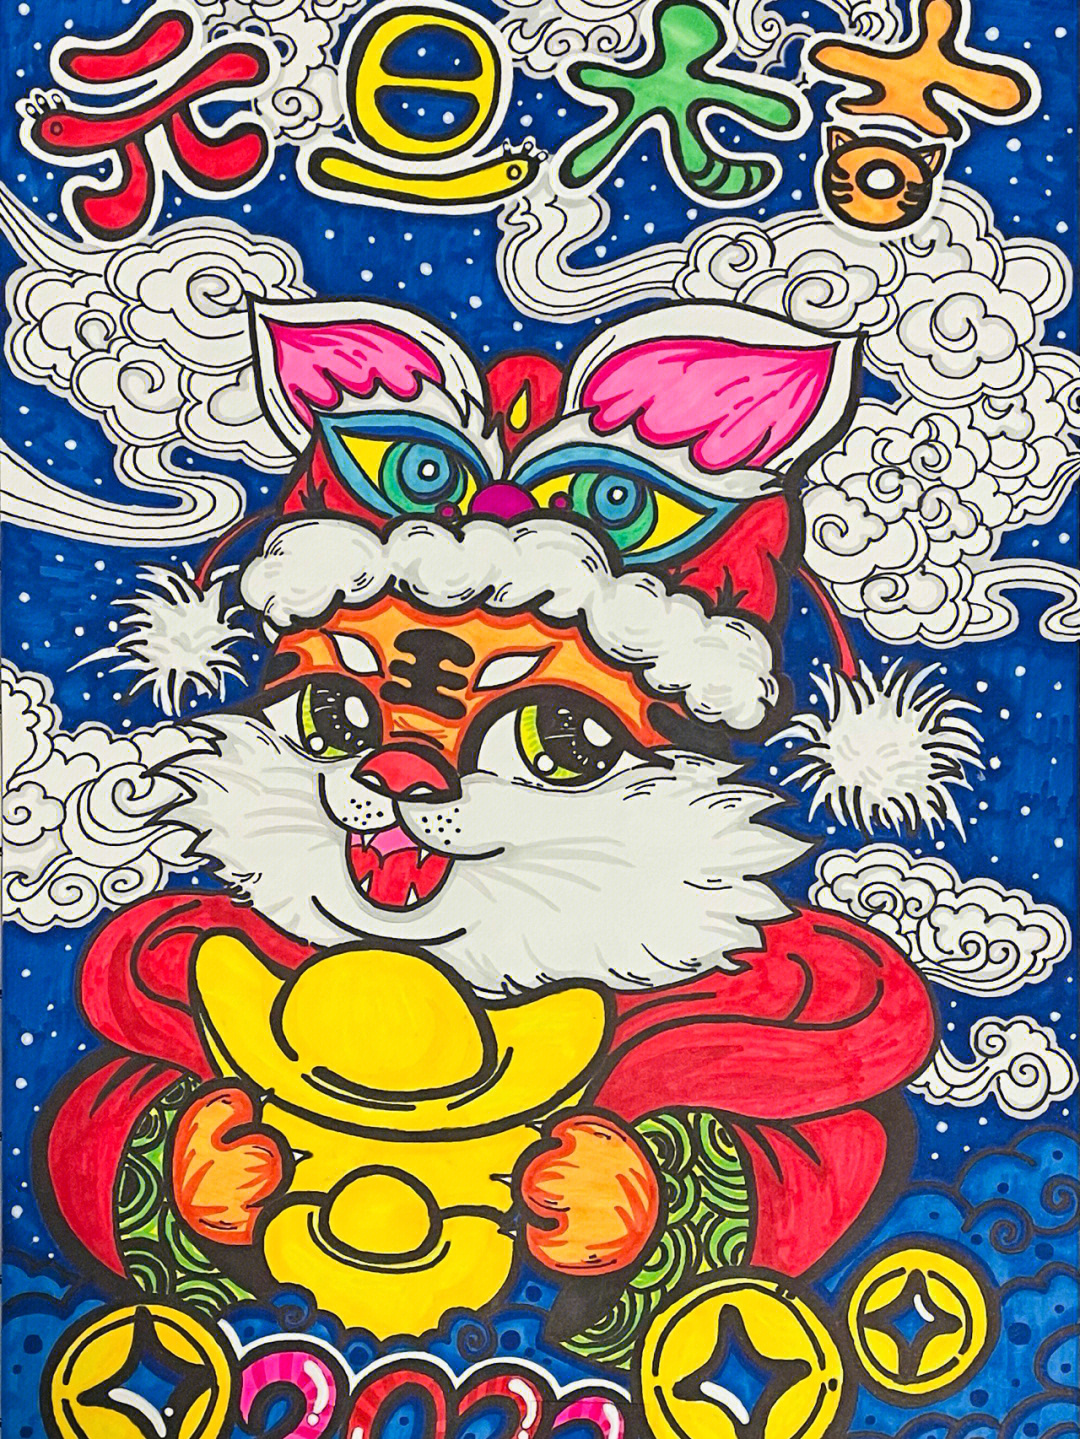 虎年的春节绘画作品图片